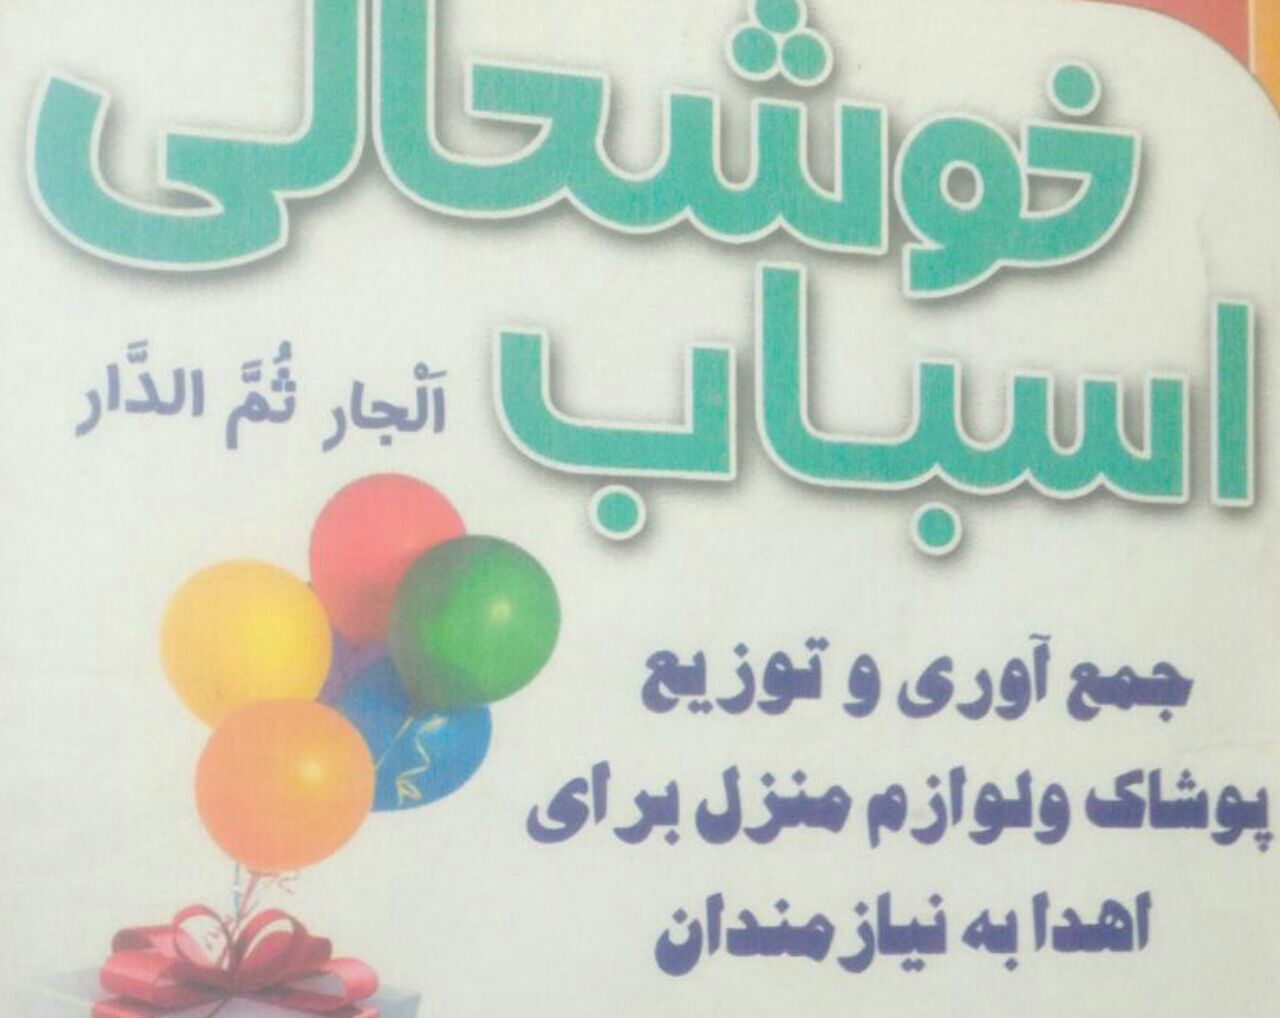 “اسباب خوشحالی “کمپین ترویج سبک زندگی اسلامی در شهرستان فلاورجان